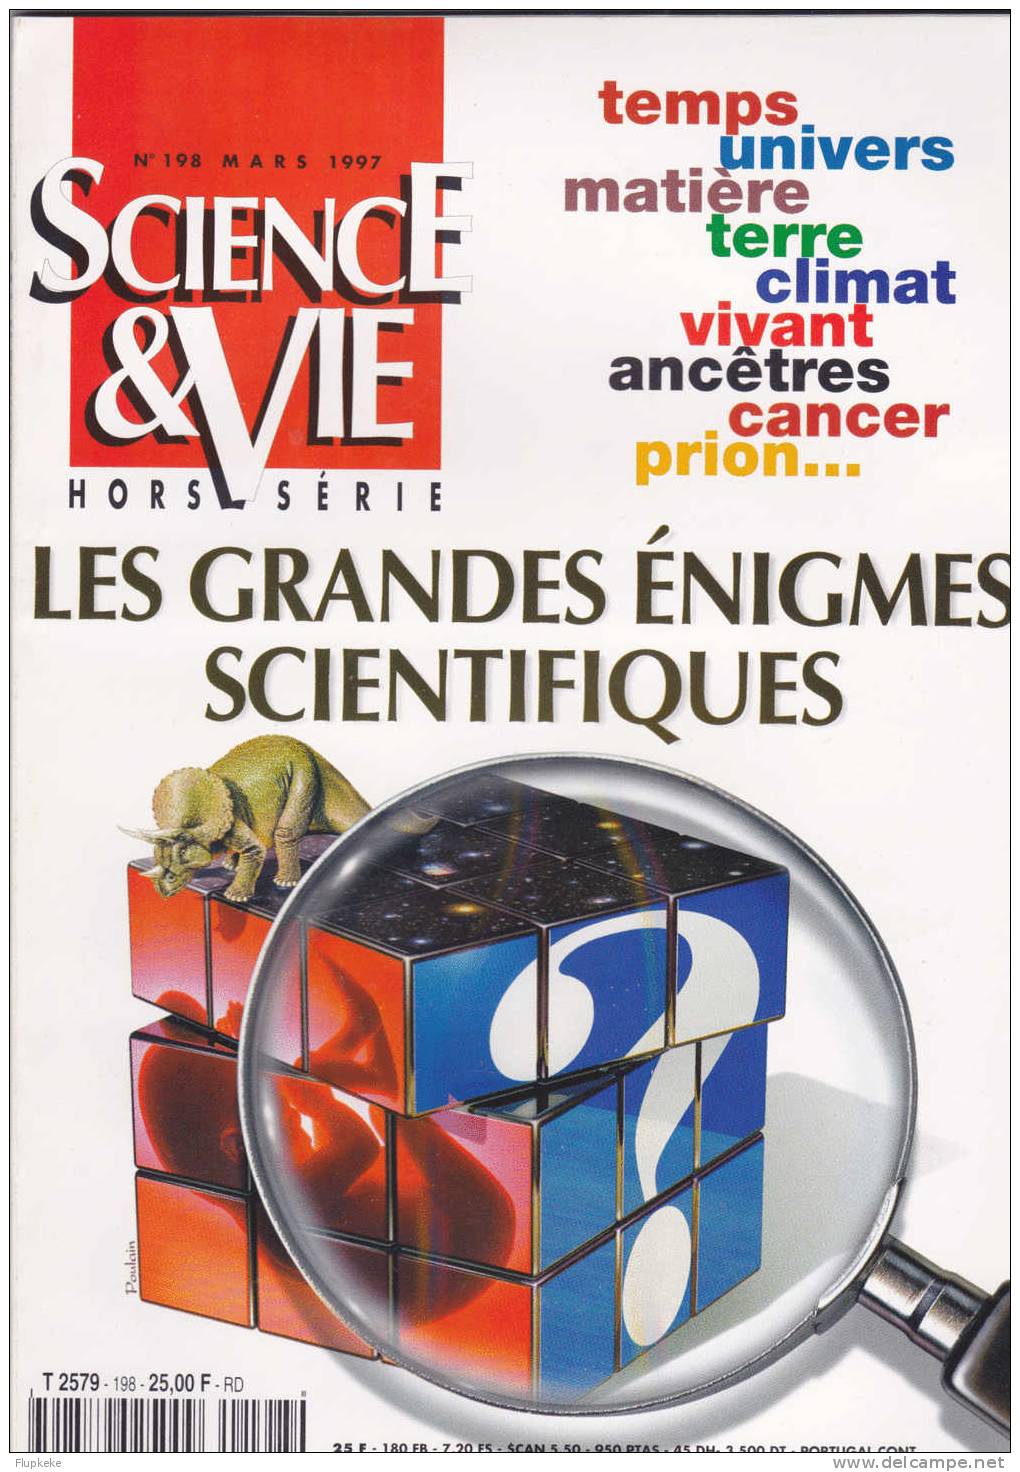 Science Et Vie HS 198 Mars 1997 Les Grandes Enigmes Scientifiques Temps Matière Terre Climat Vivant Ancêtres Cancer - Science